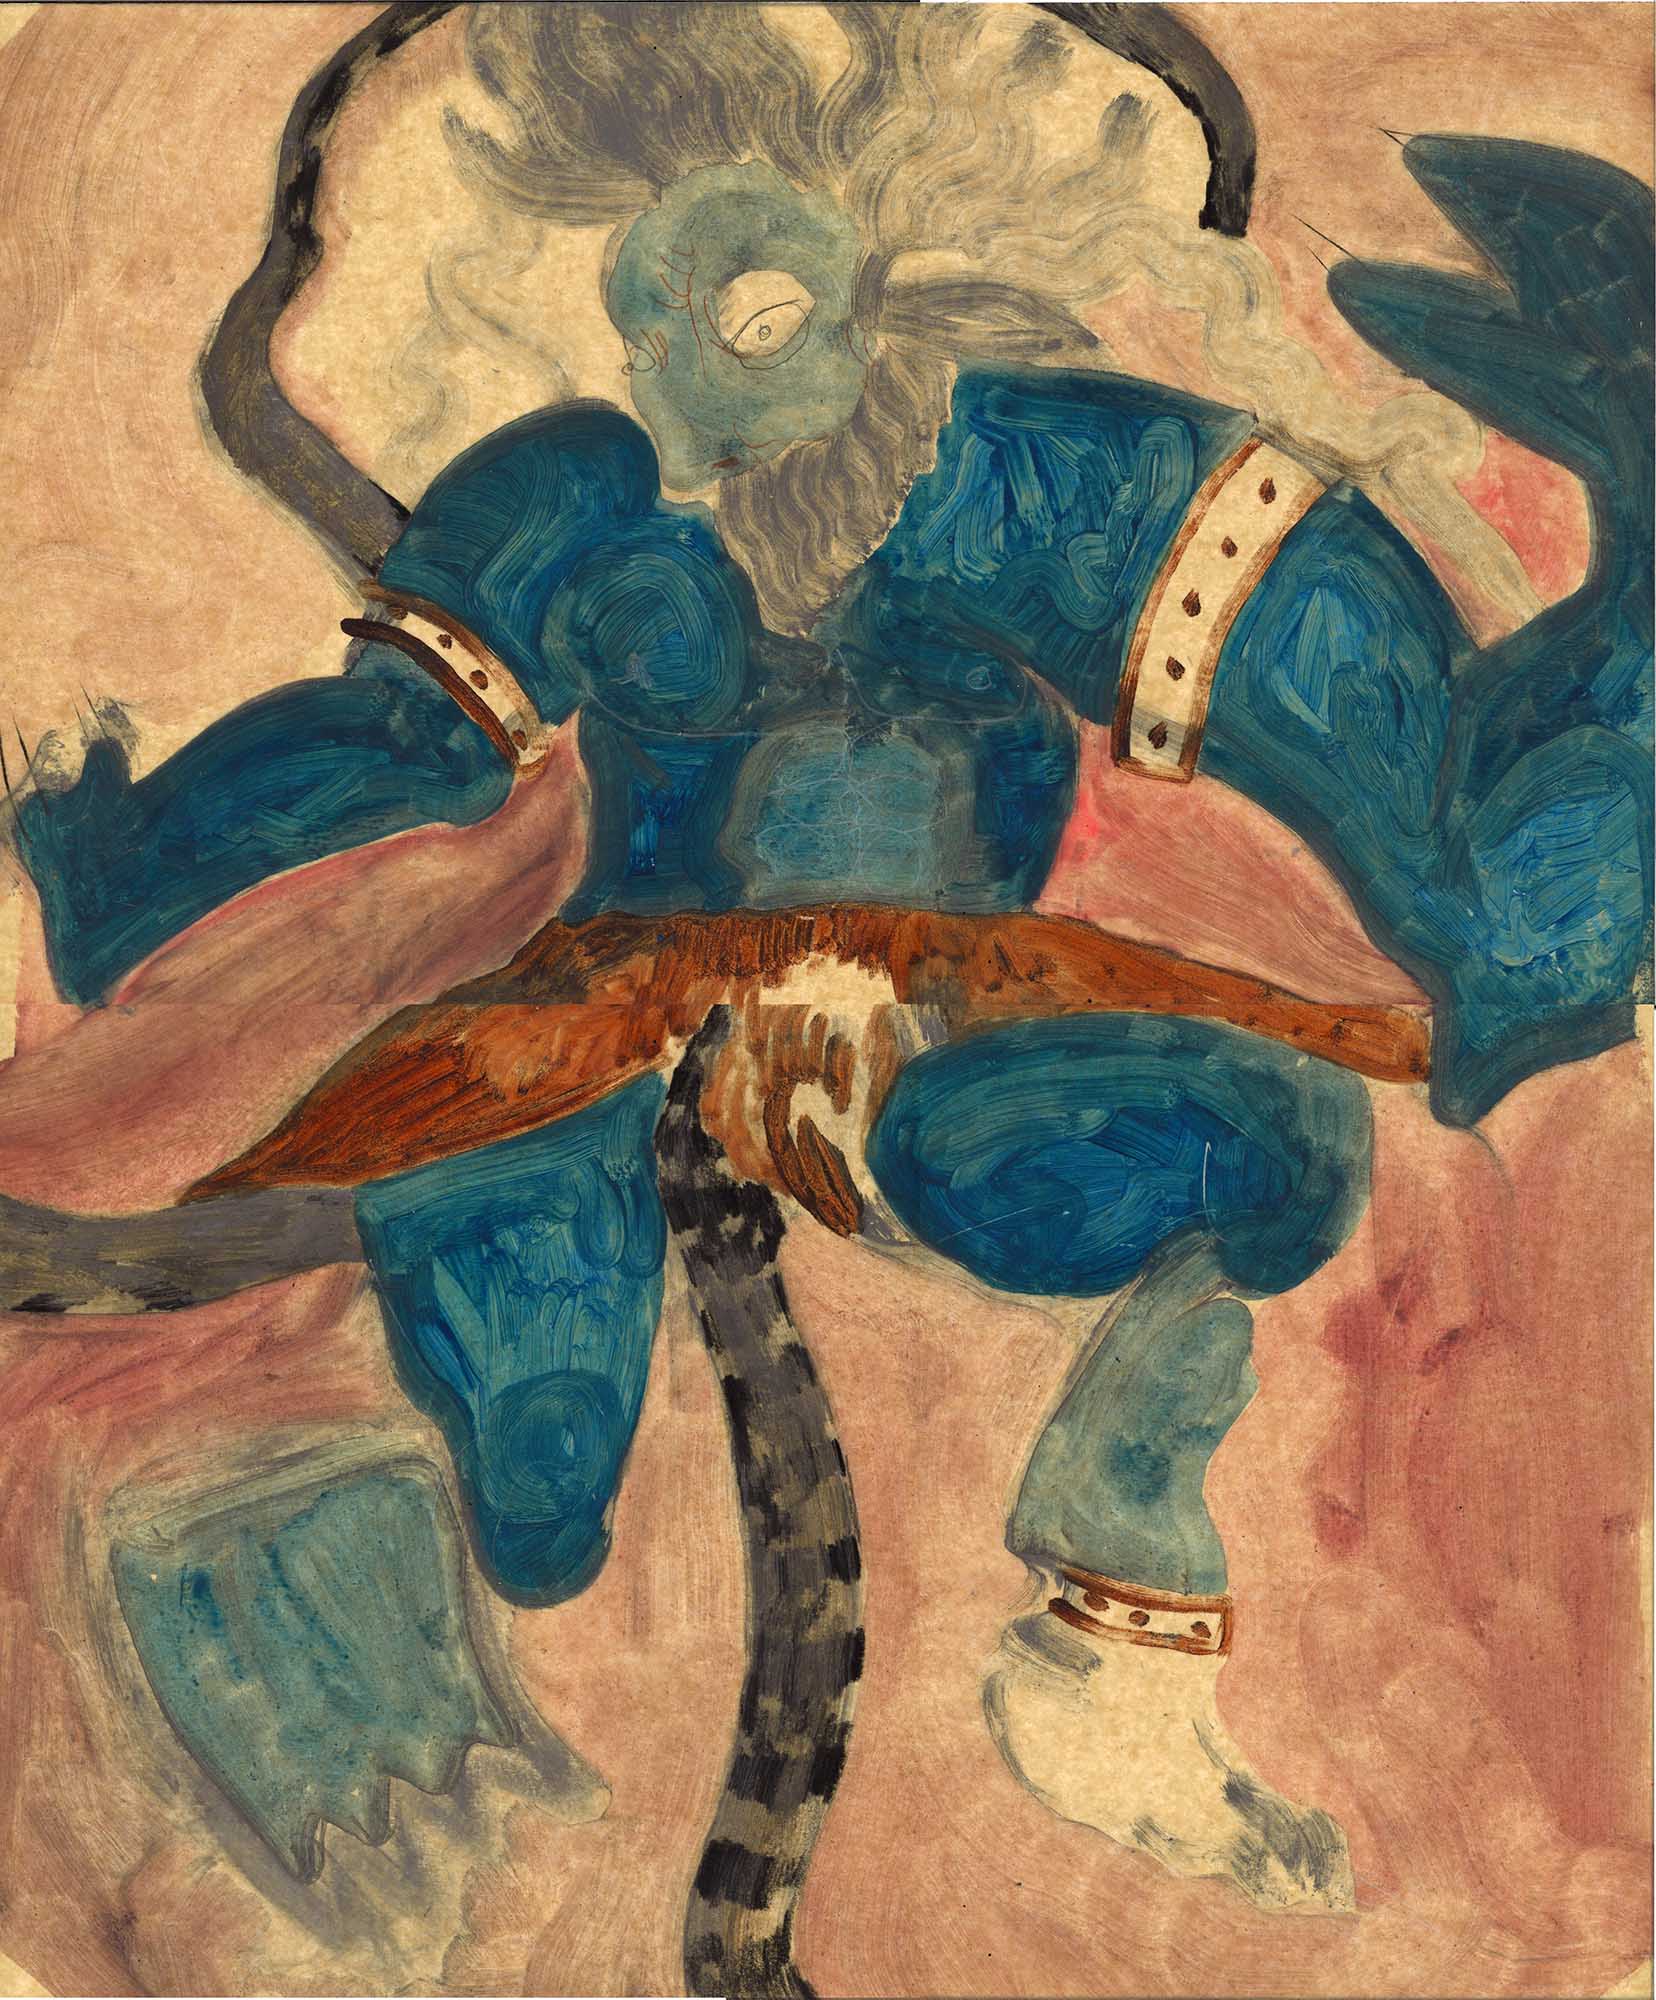 Danseur bleu
huile sur papier cuisson
53 x 64 cm